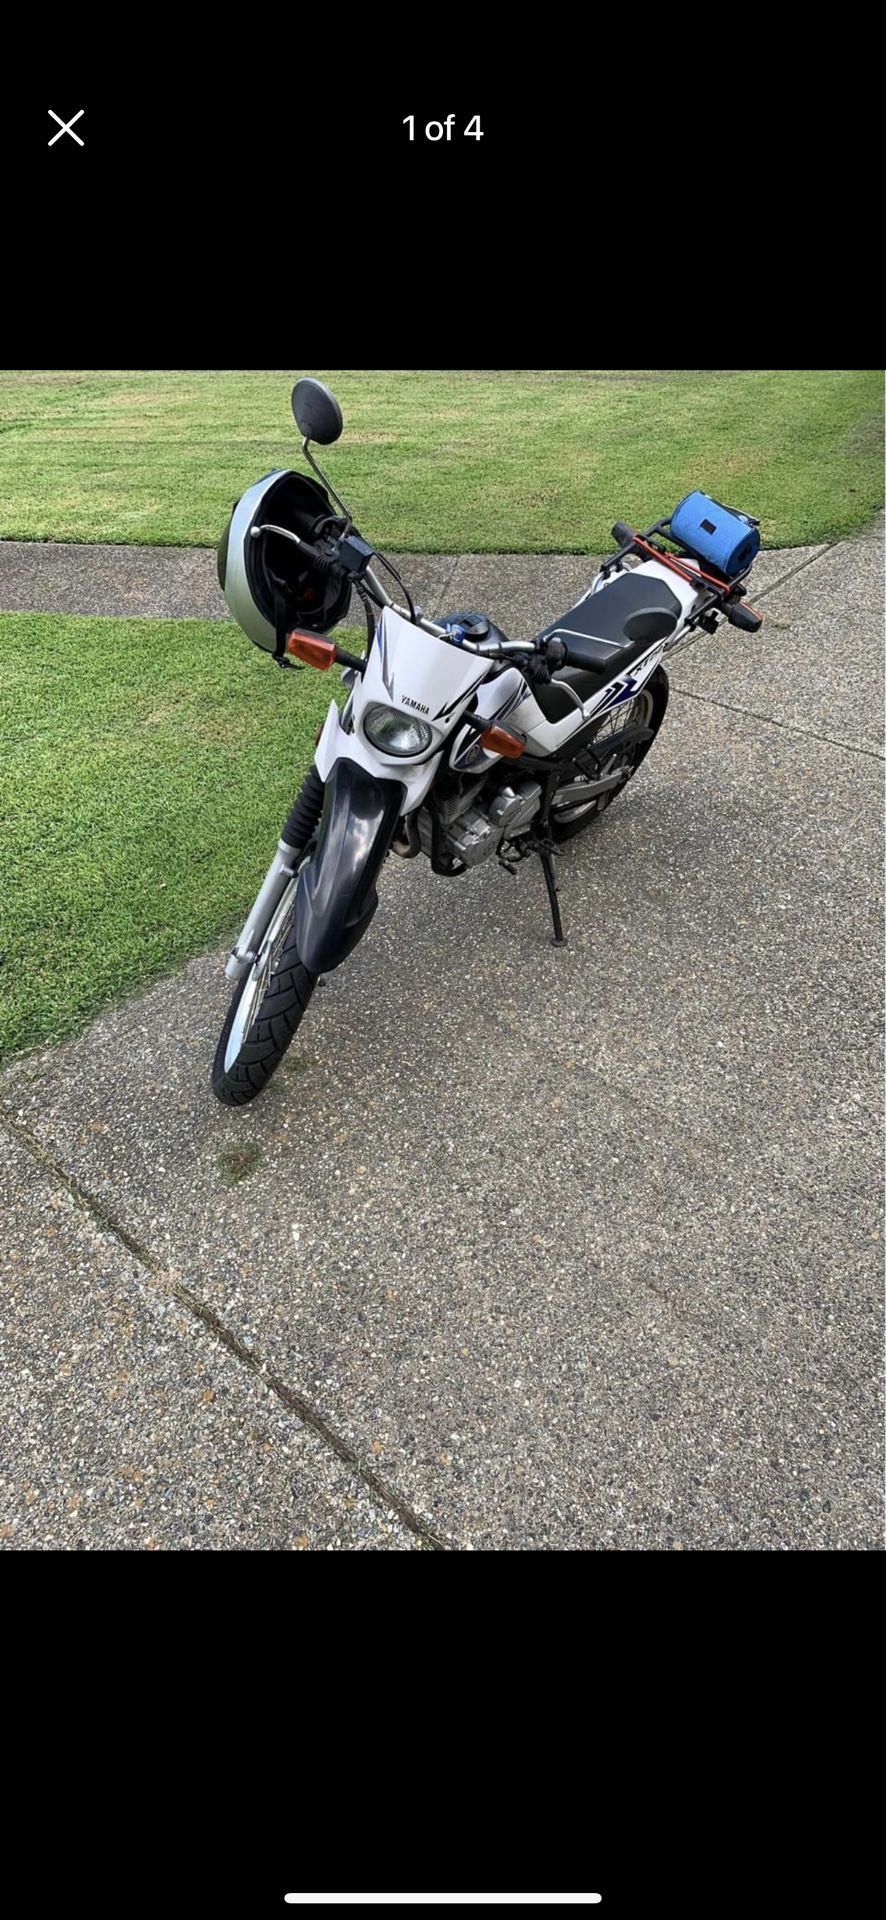 2009 Yamaha XT250